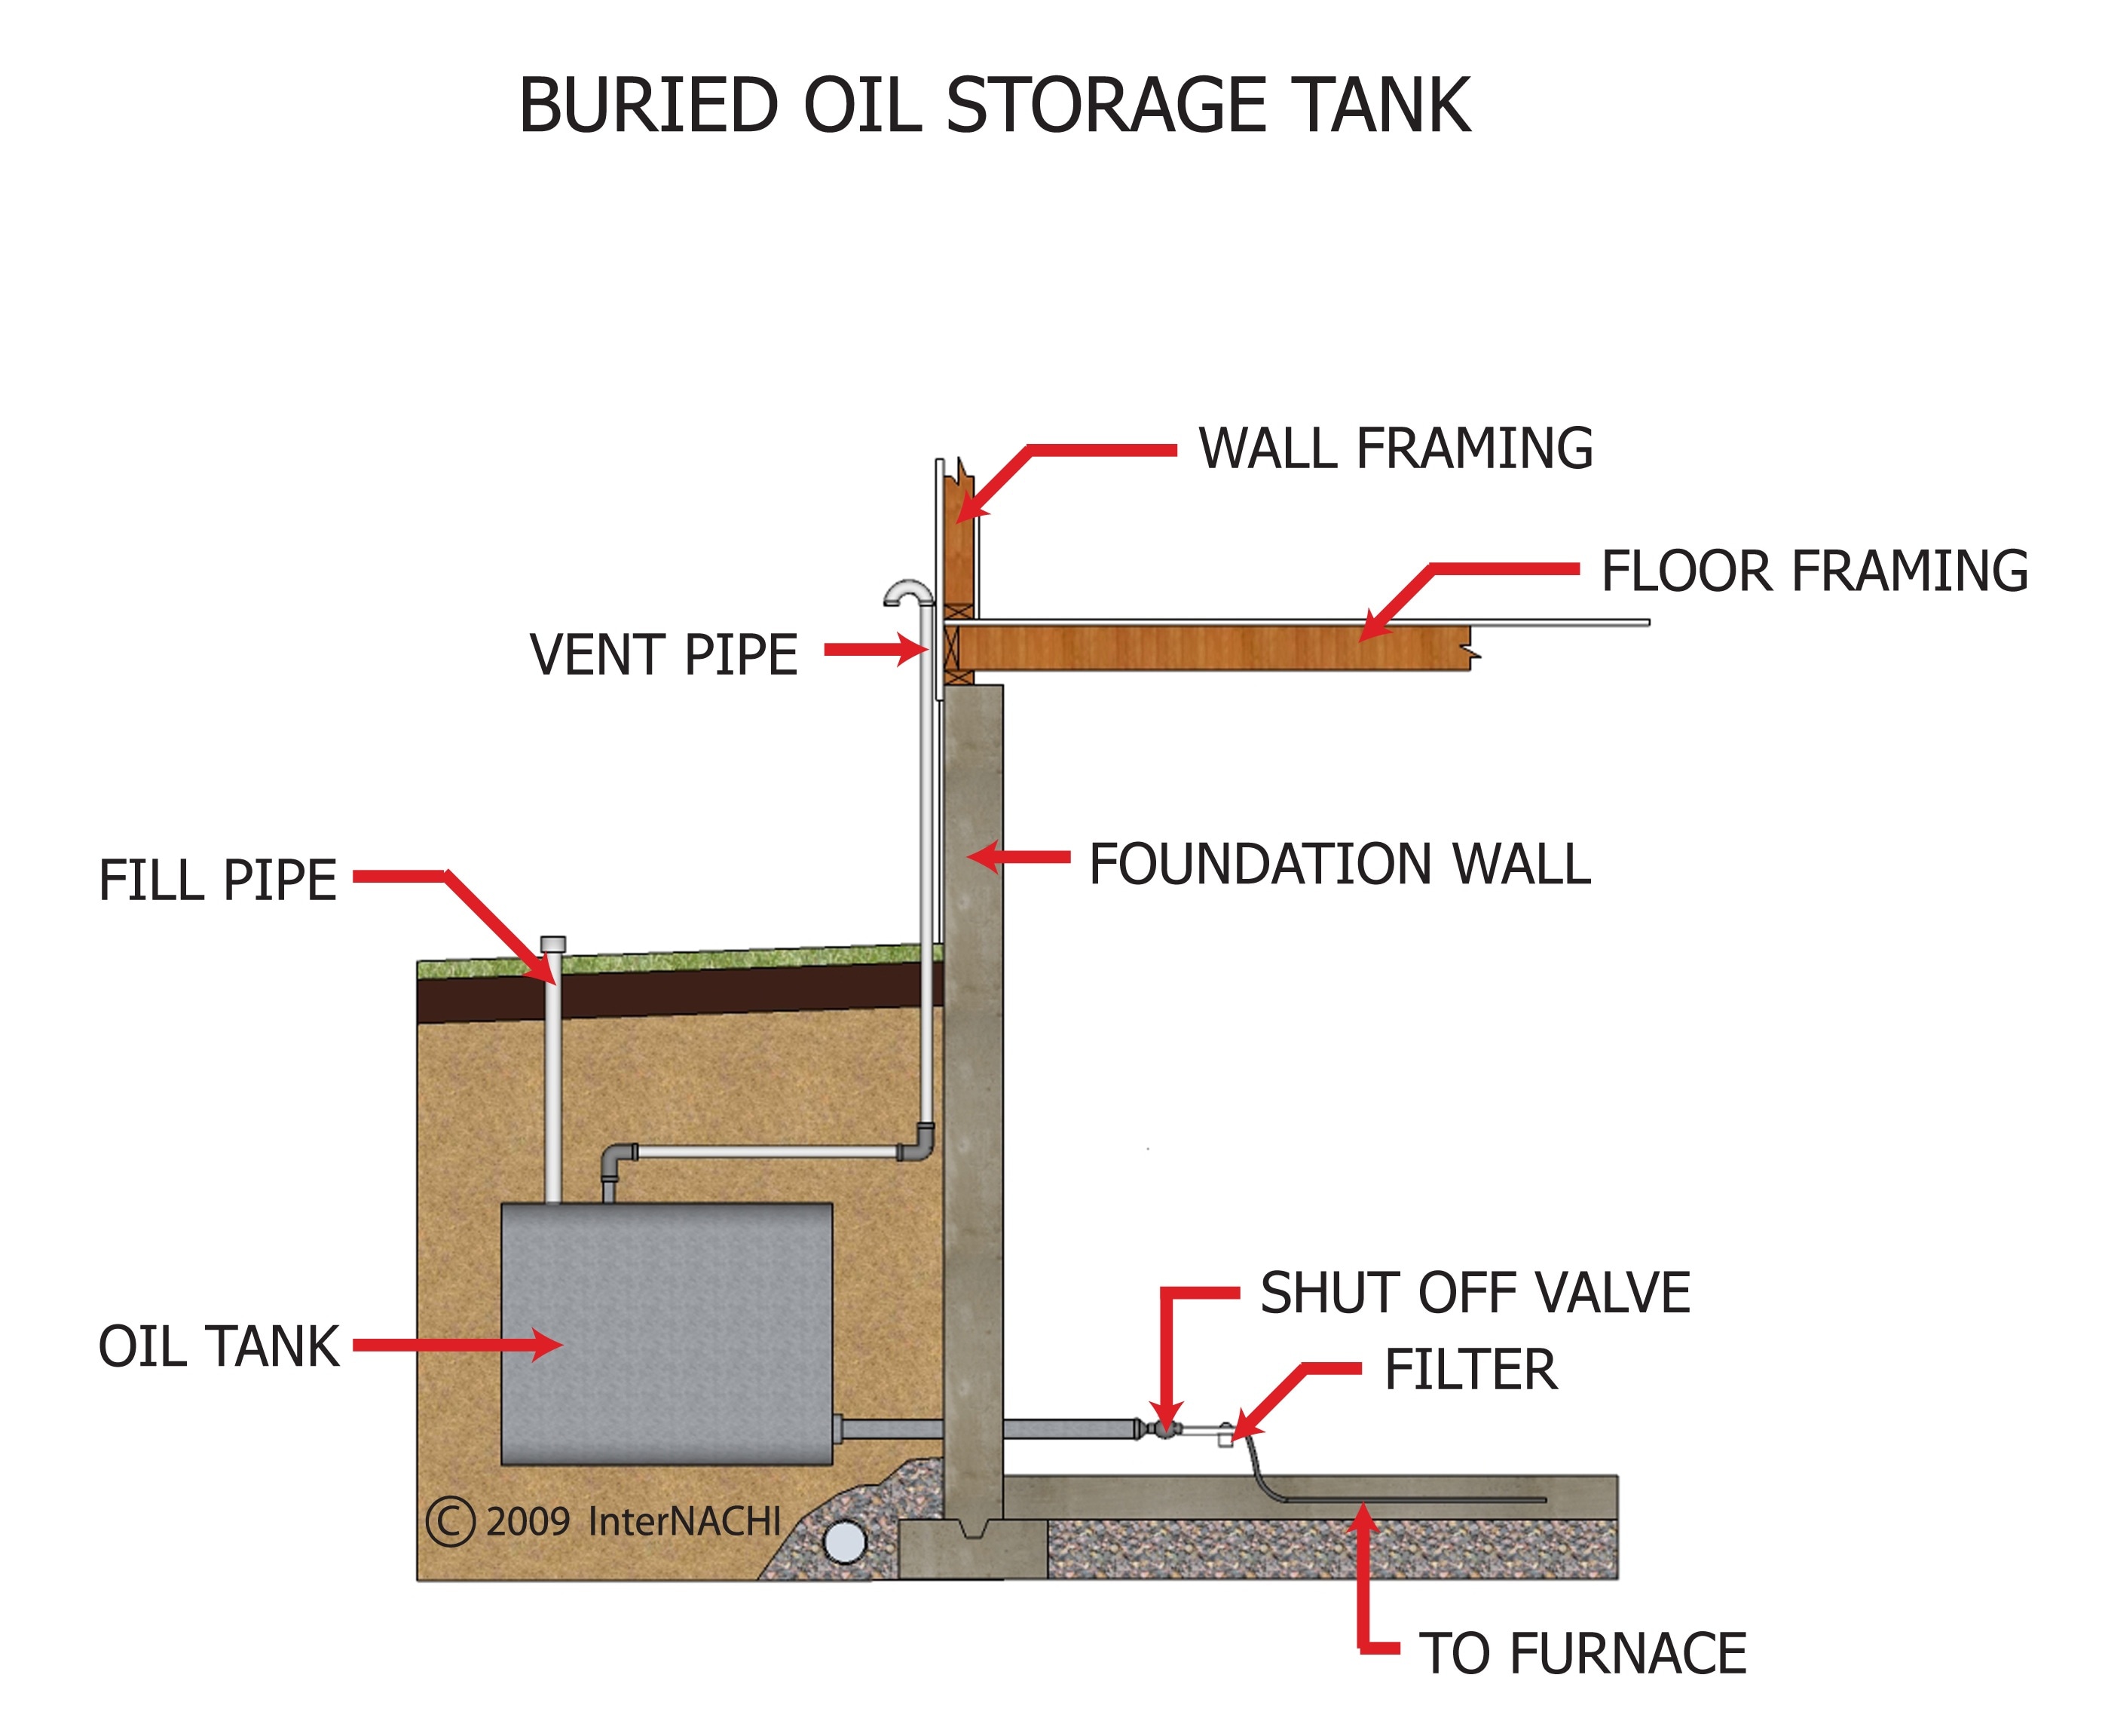 Buried oil storage tank.